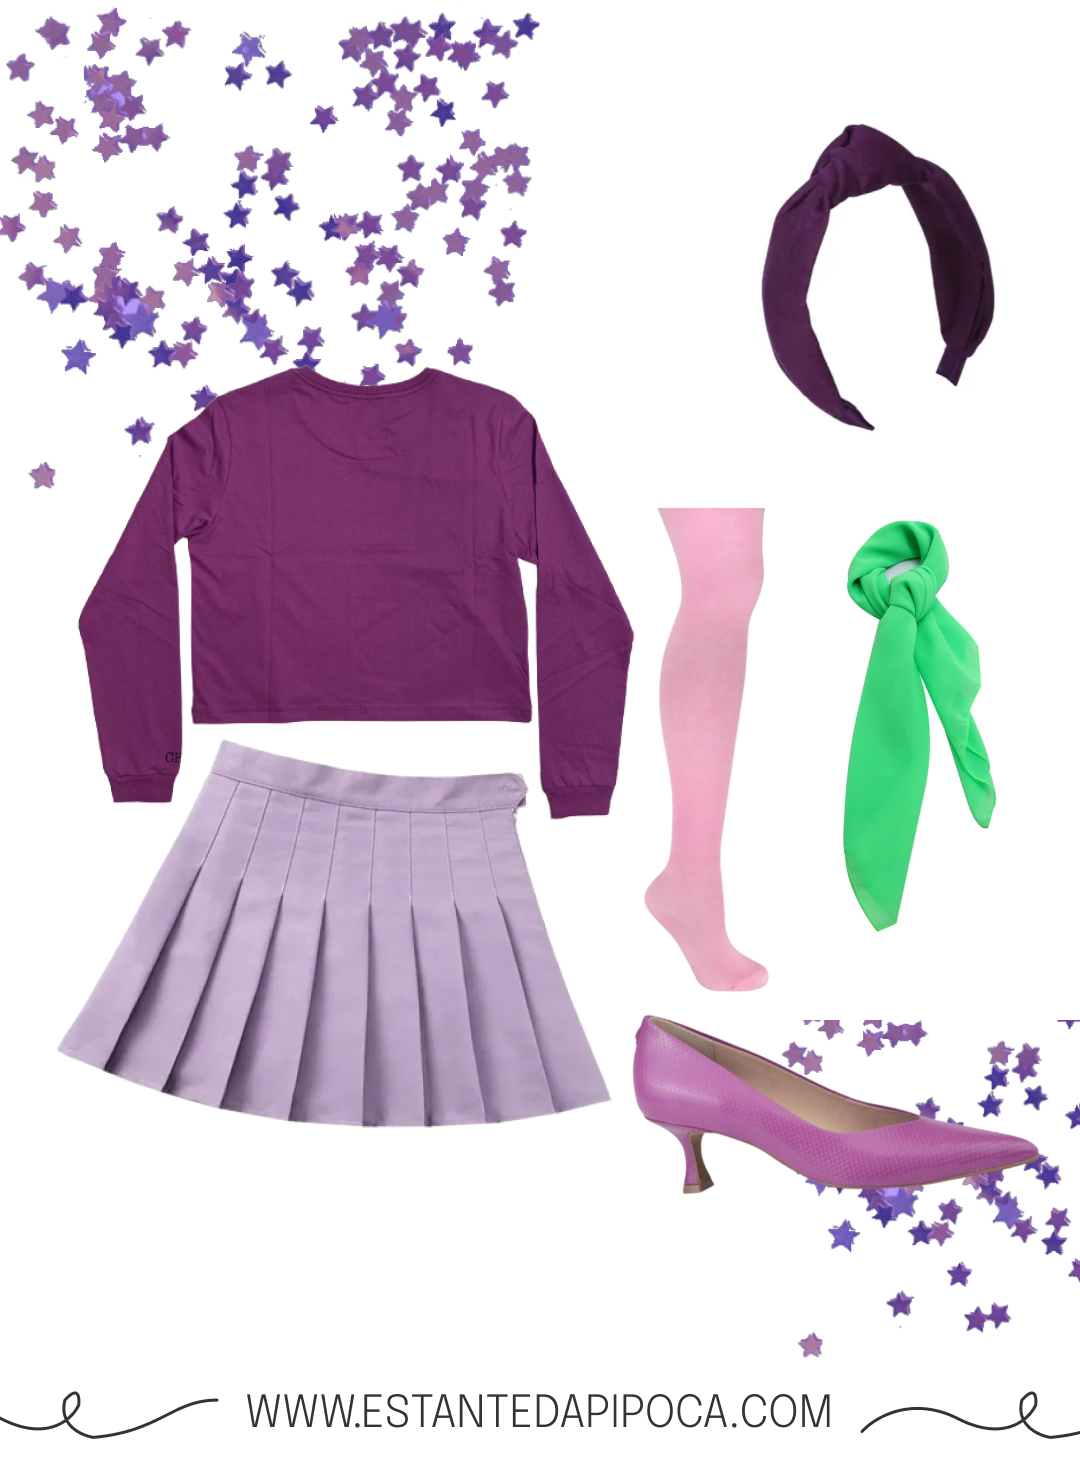 Elementos que compõem a fantasia de halloween feminina de Daphne: blusa, saia, sapato e tiara roxos, lenço verde e meia calça rosa.